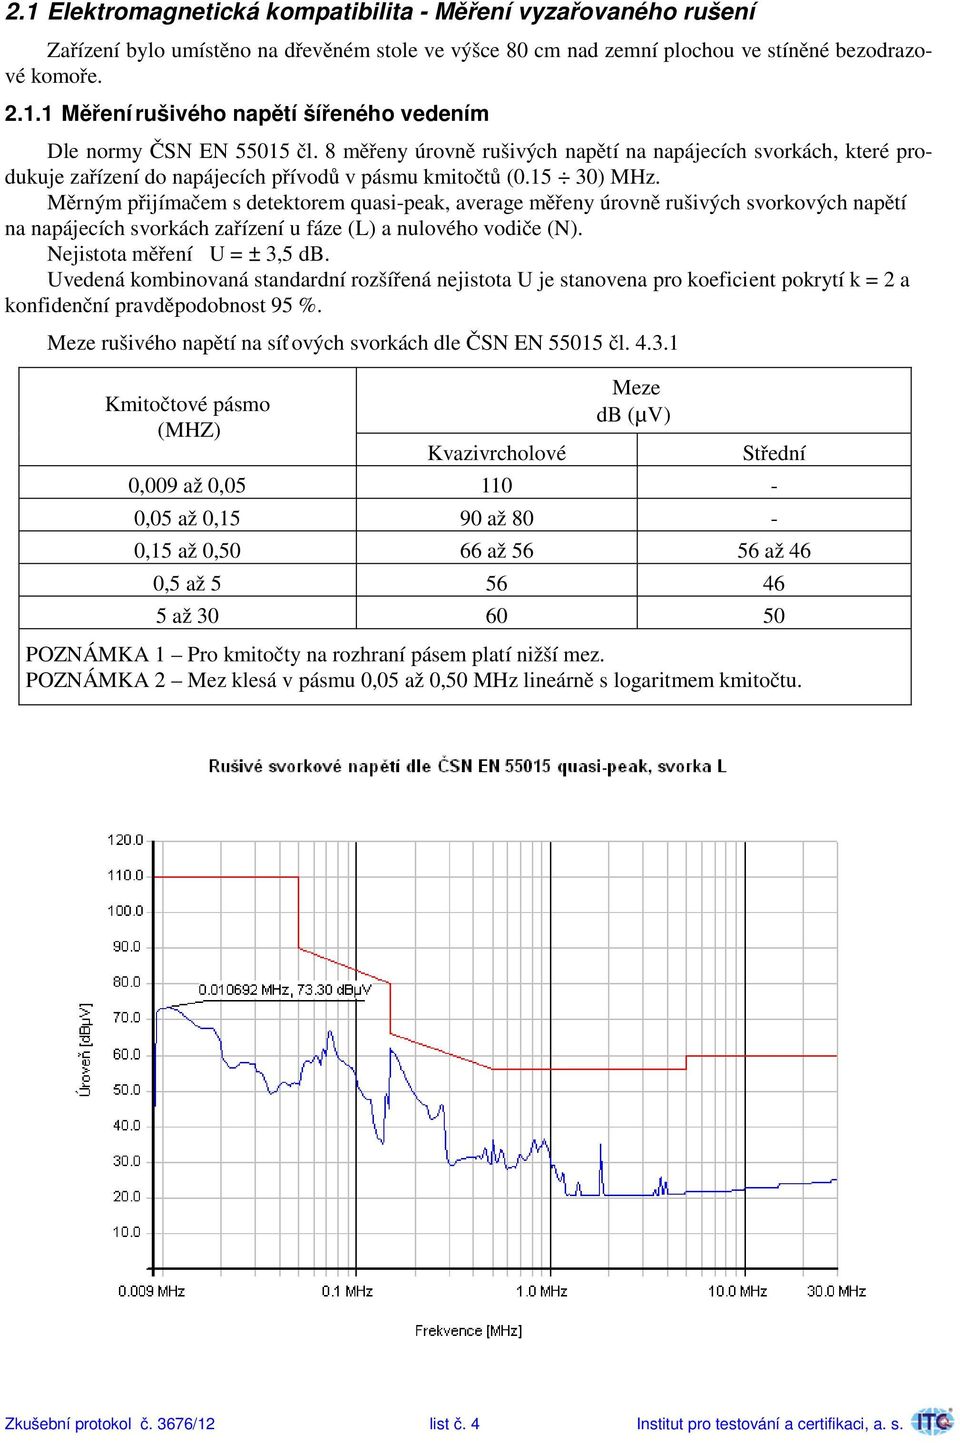 Měrným přijímačem s detektorem quasi-peak, average měřeny úrovně rušivých svorkových napětí na napájecích svorkách zařízení u fáze (L) a nulového vodiče (N). Nejistota měření U = ± 3,5 db.